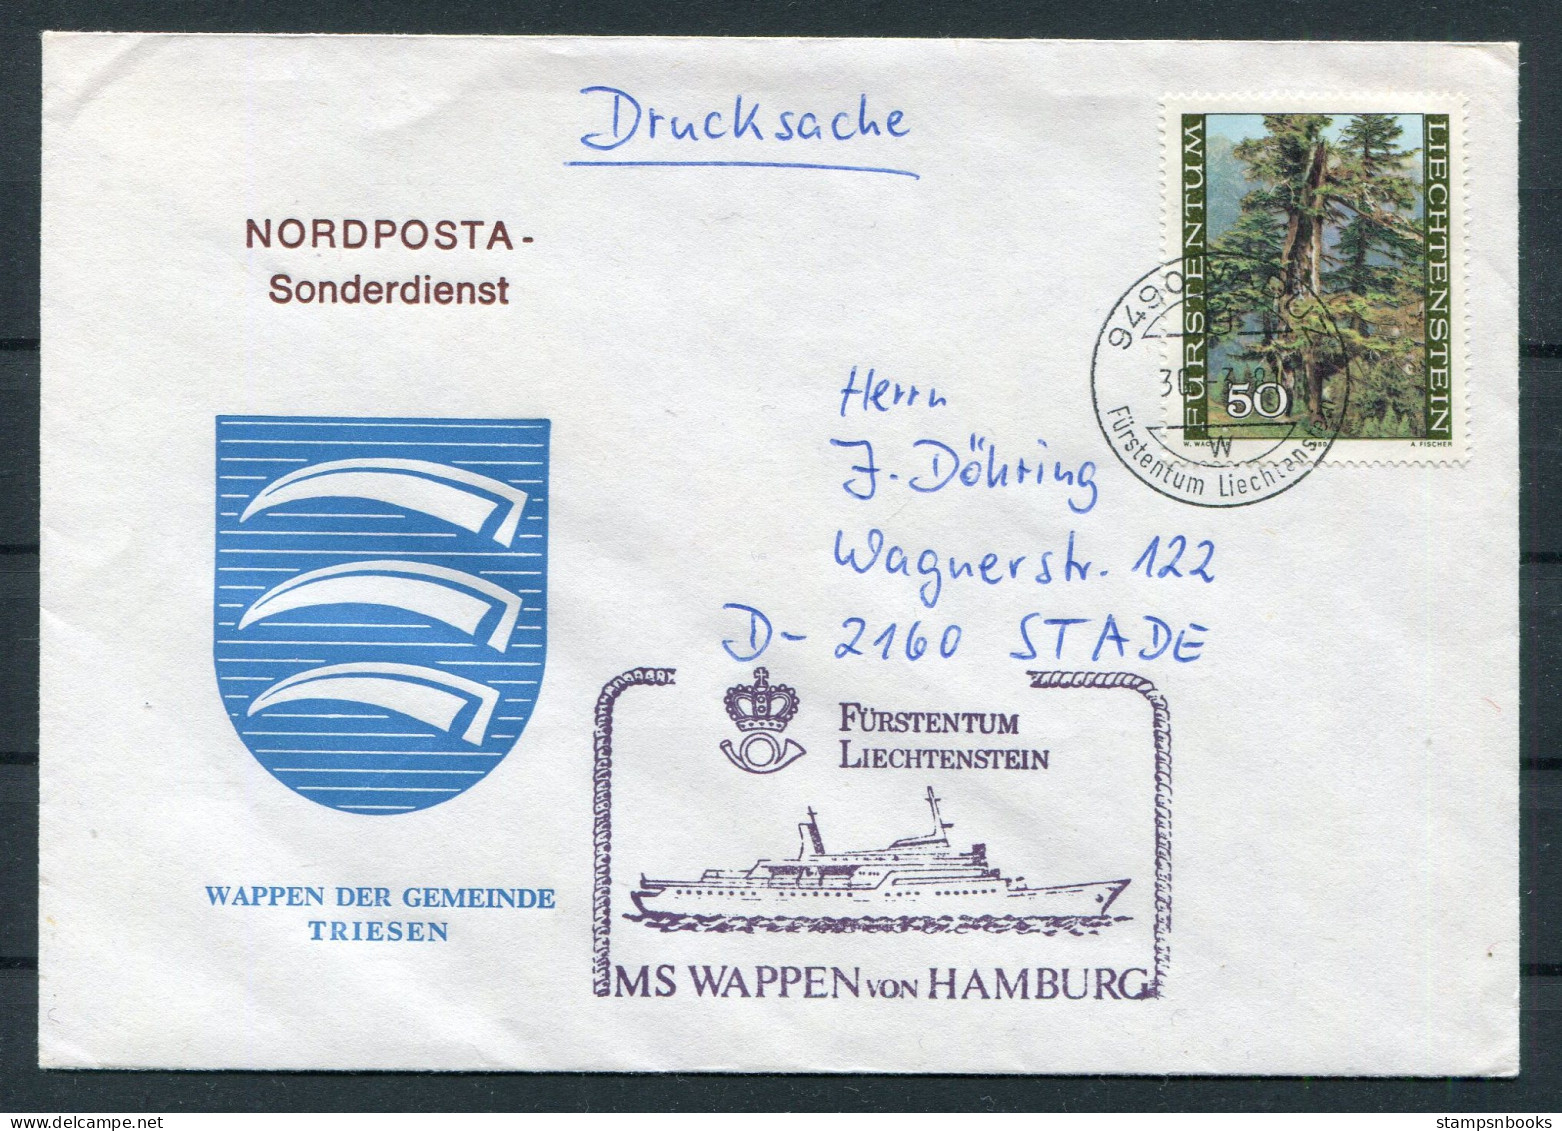 1981 Liechtenstein Vaduz Trees MS WAPPEN VON HAMBURG Ship Cover. Wappen Der Gemeinde TRIESEN Coat-of-Arms - Briefe U. Dokumente